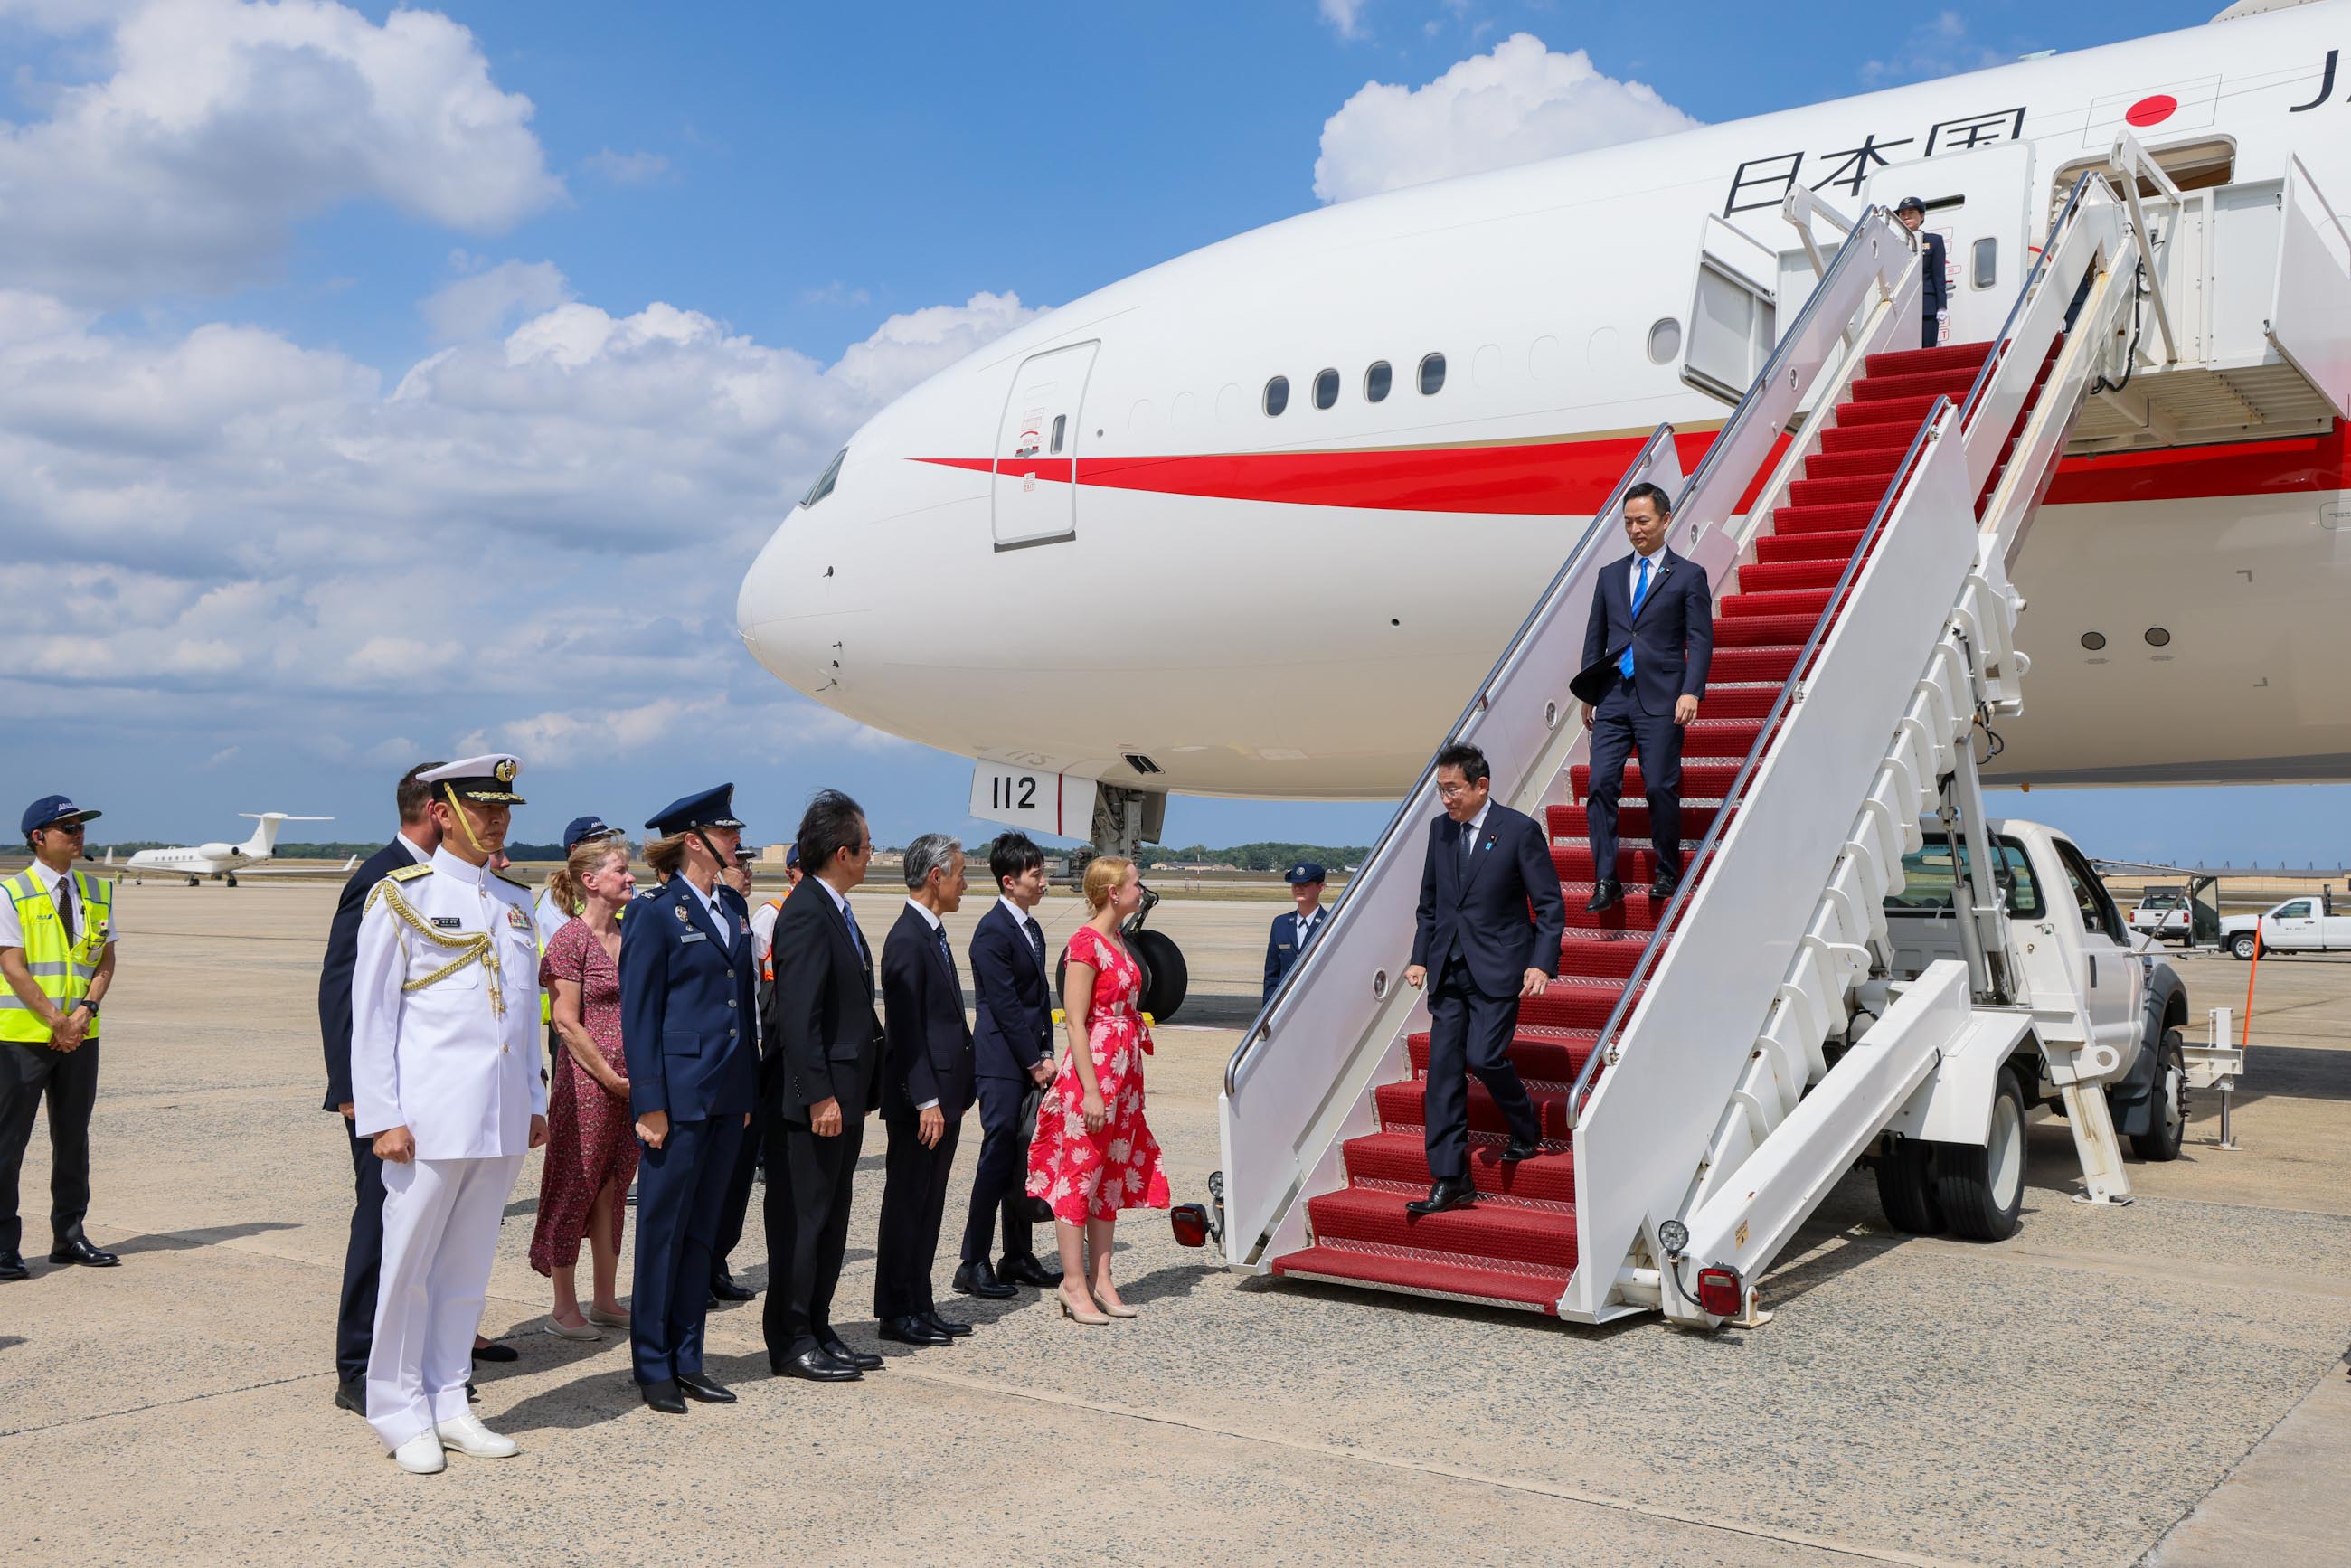 Prime Minister Kishida arriving in Washington DC (3)